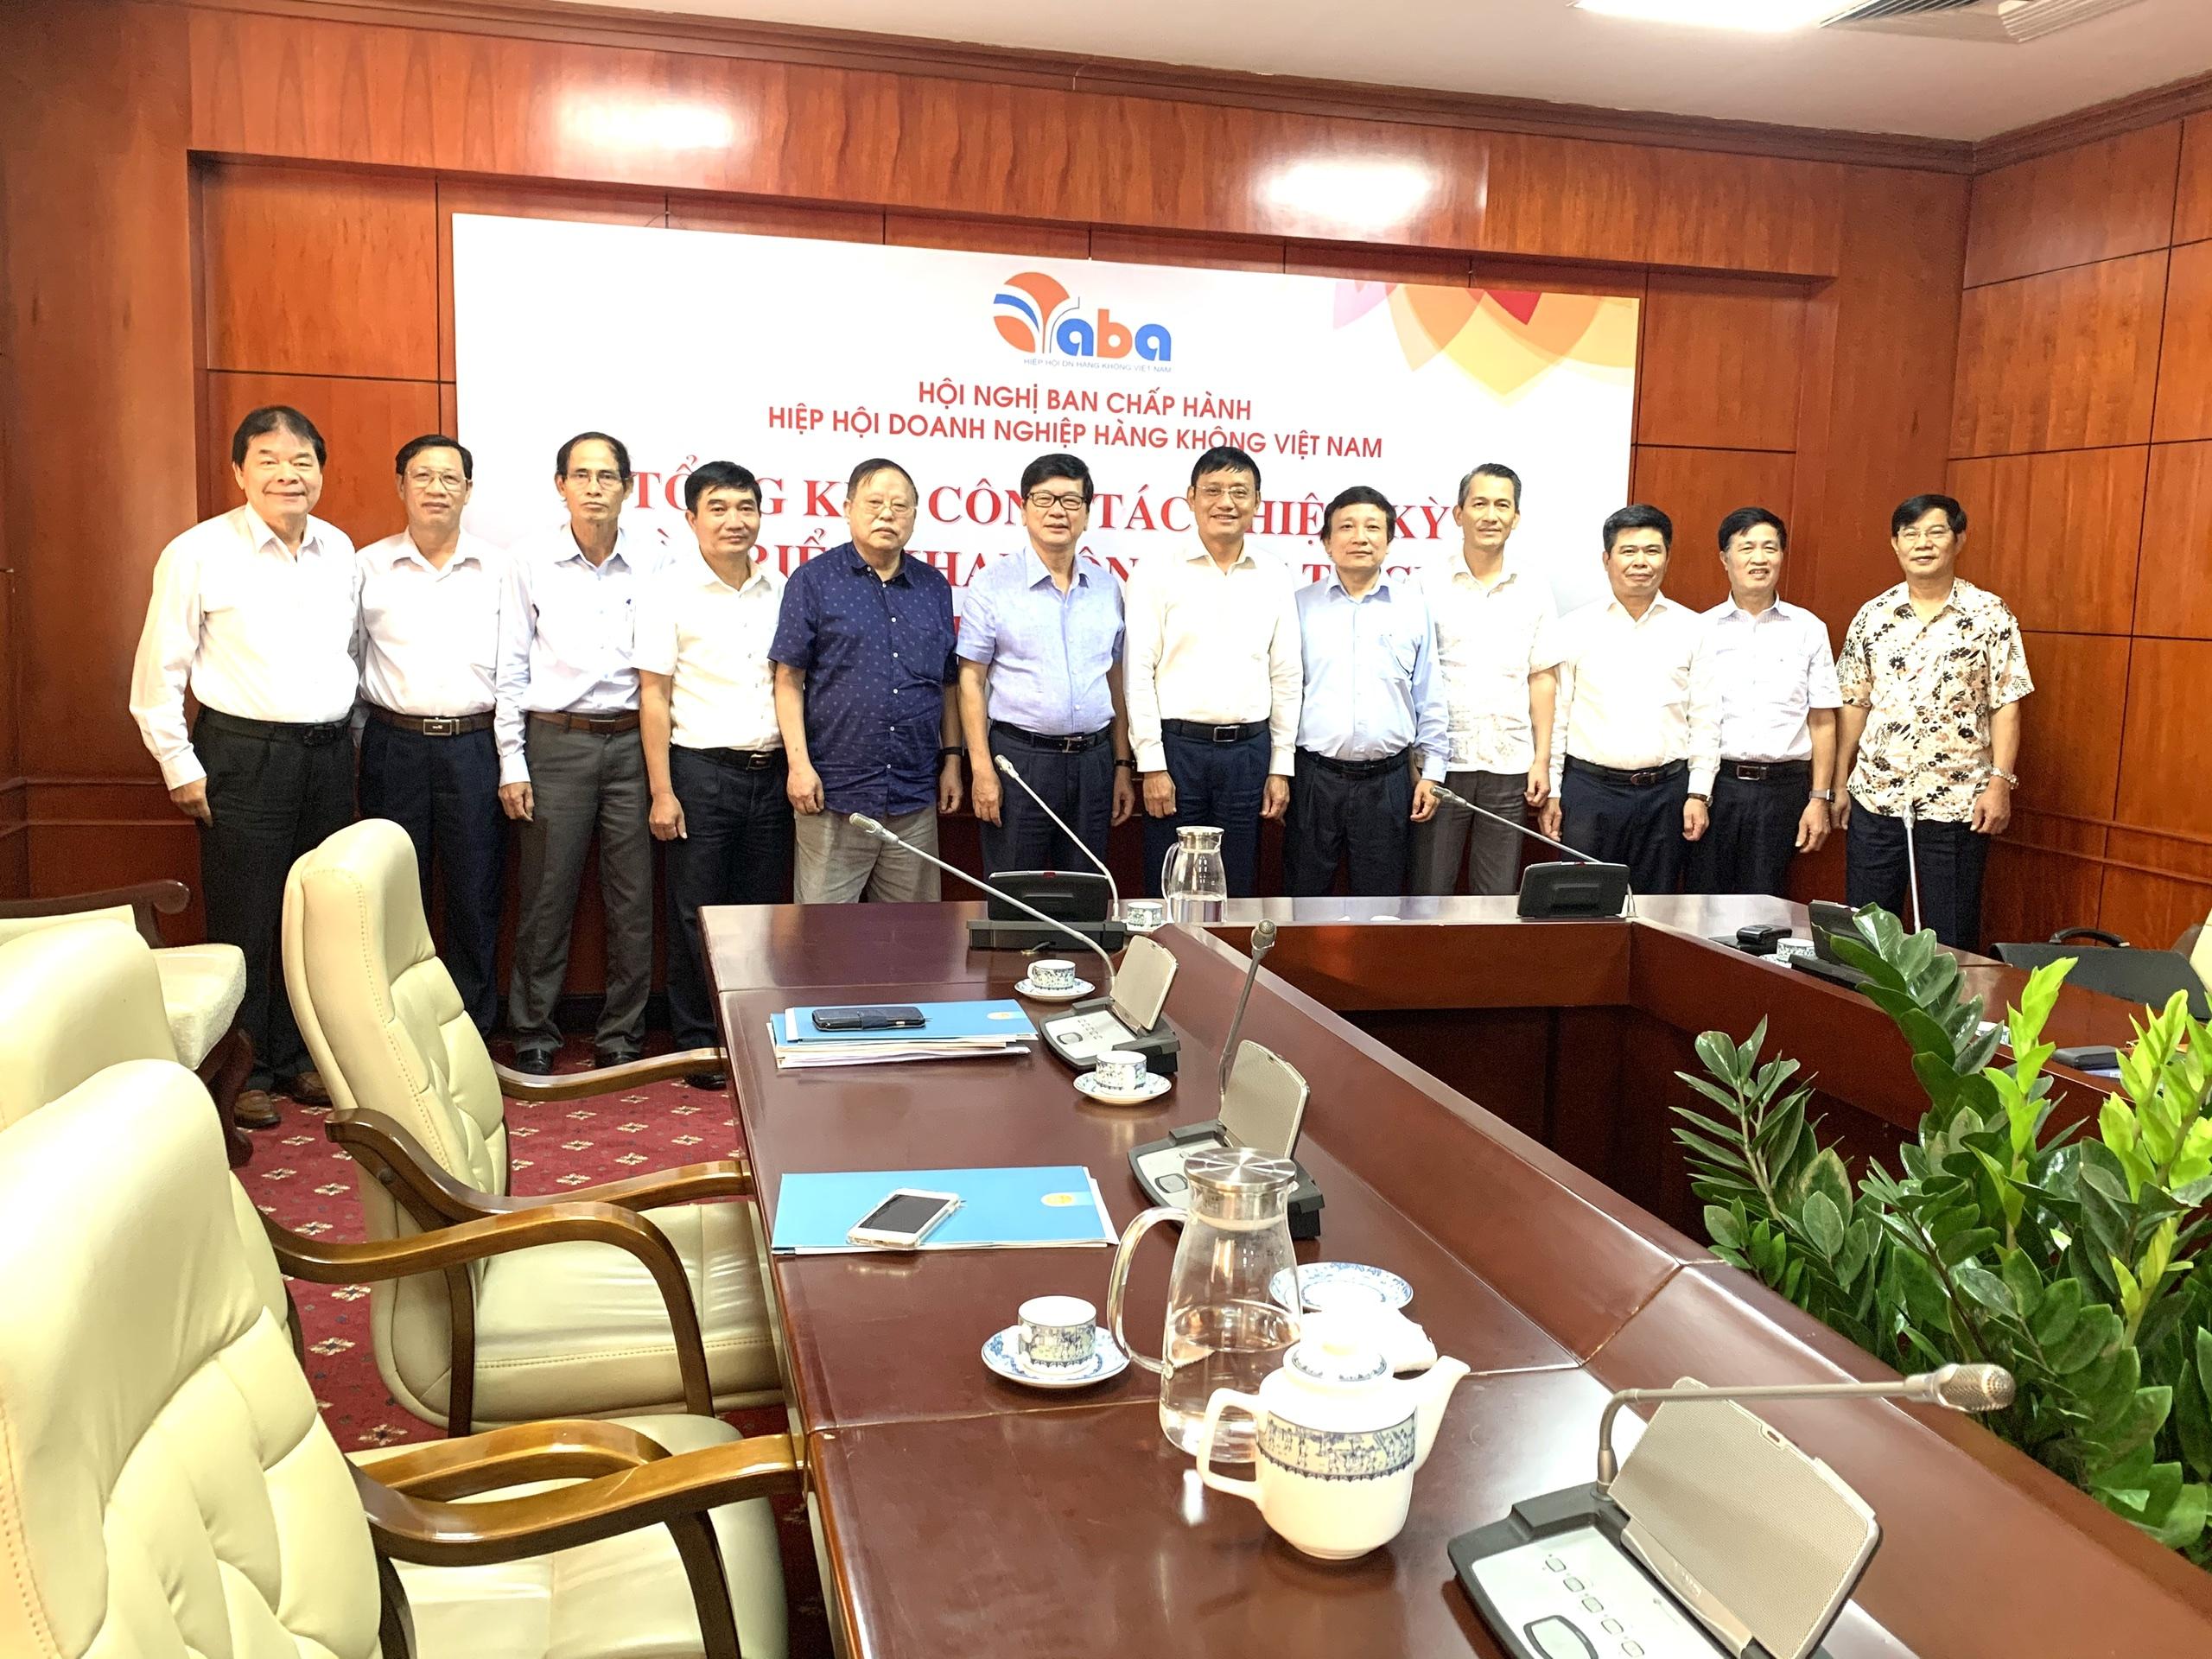 Hiệp hội doanh nghiệp hàng không Việt Nam tổng kết công tác nhiệm kỳ 2, triển khai công tác nhiệm kỳ 3(2020-2025).